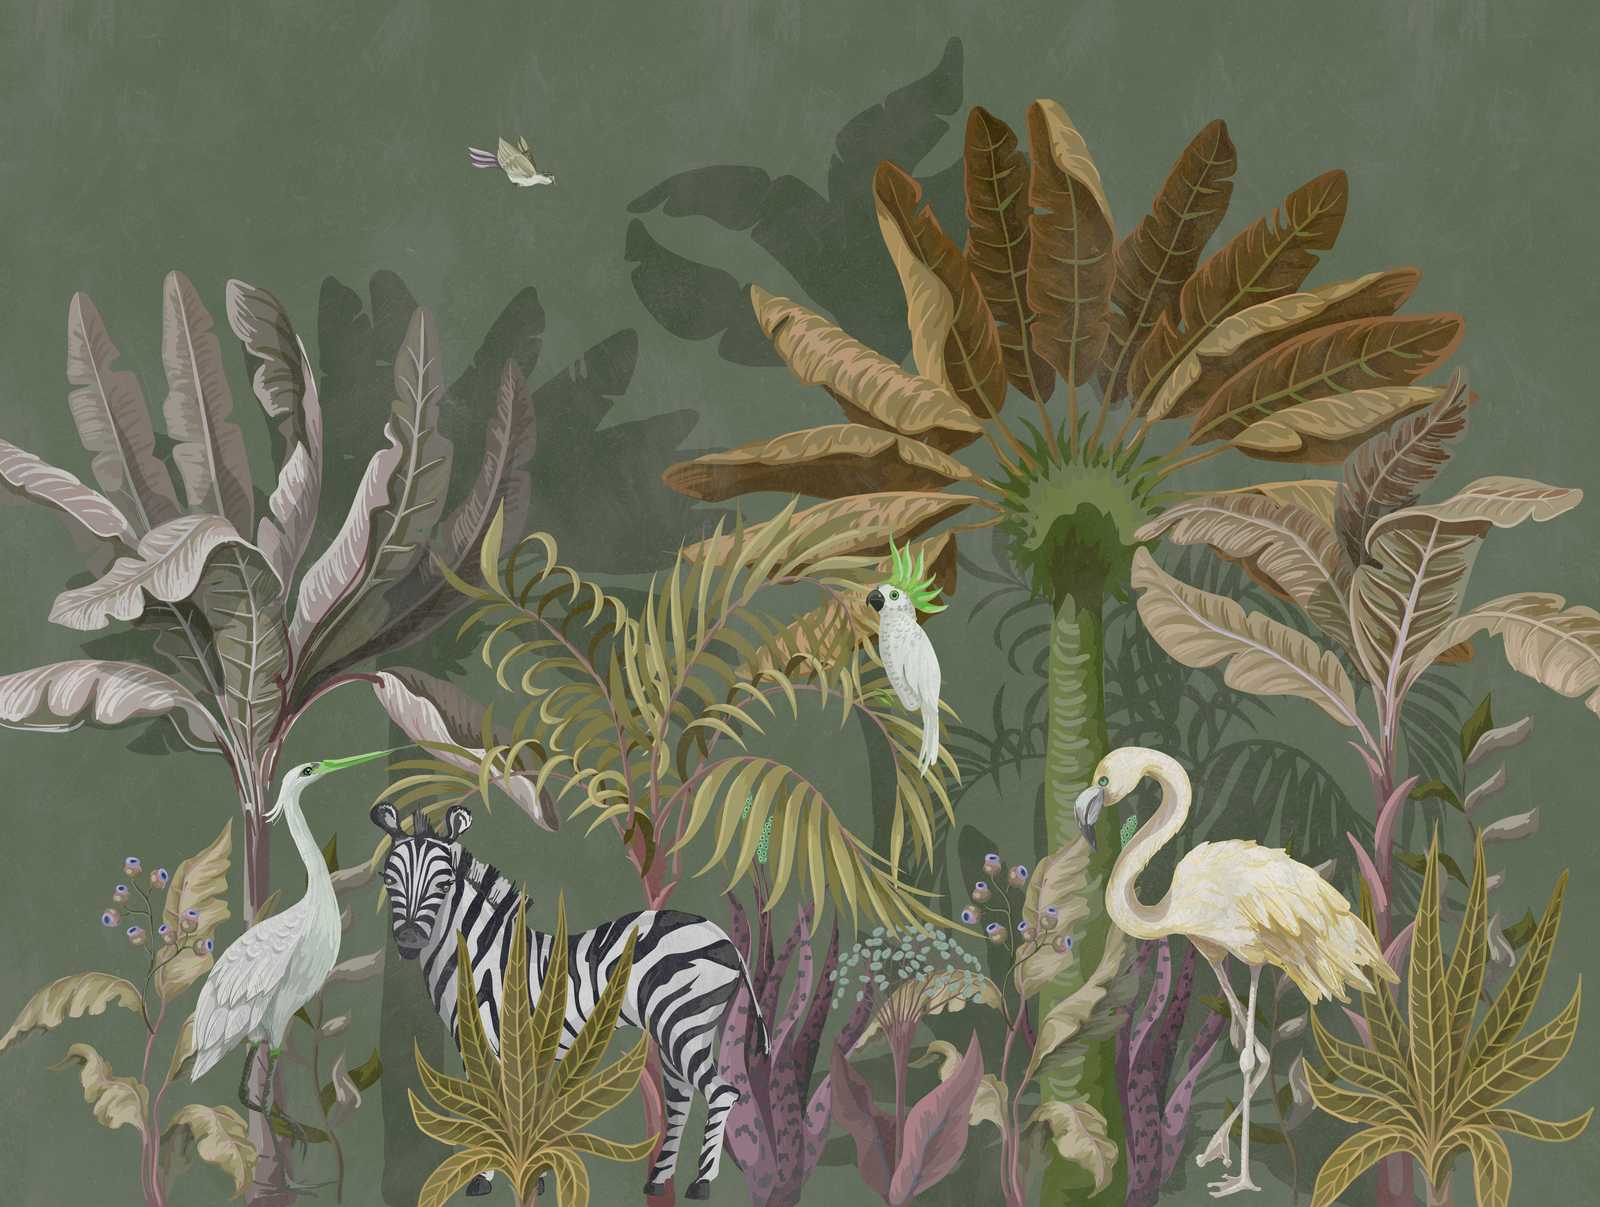             behang nieuwigheid | jungle motief behang foto dieren & planten
        